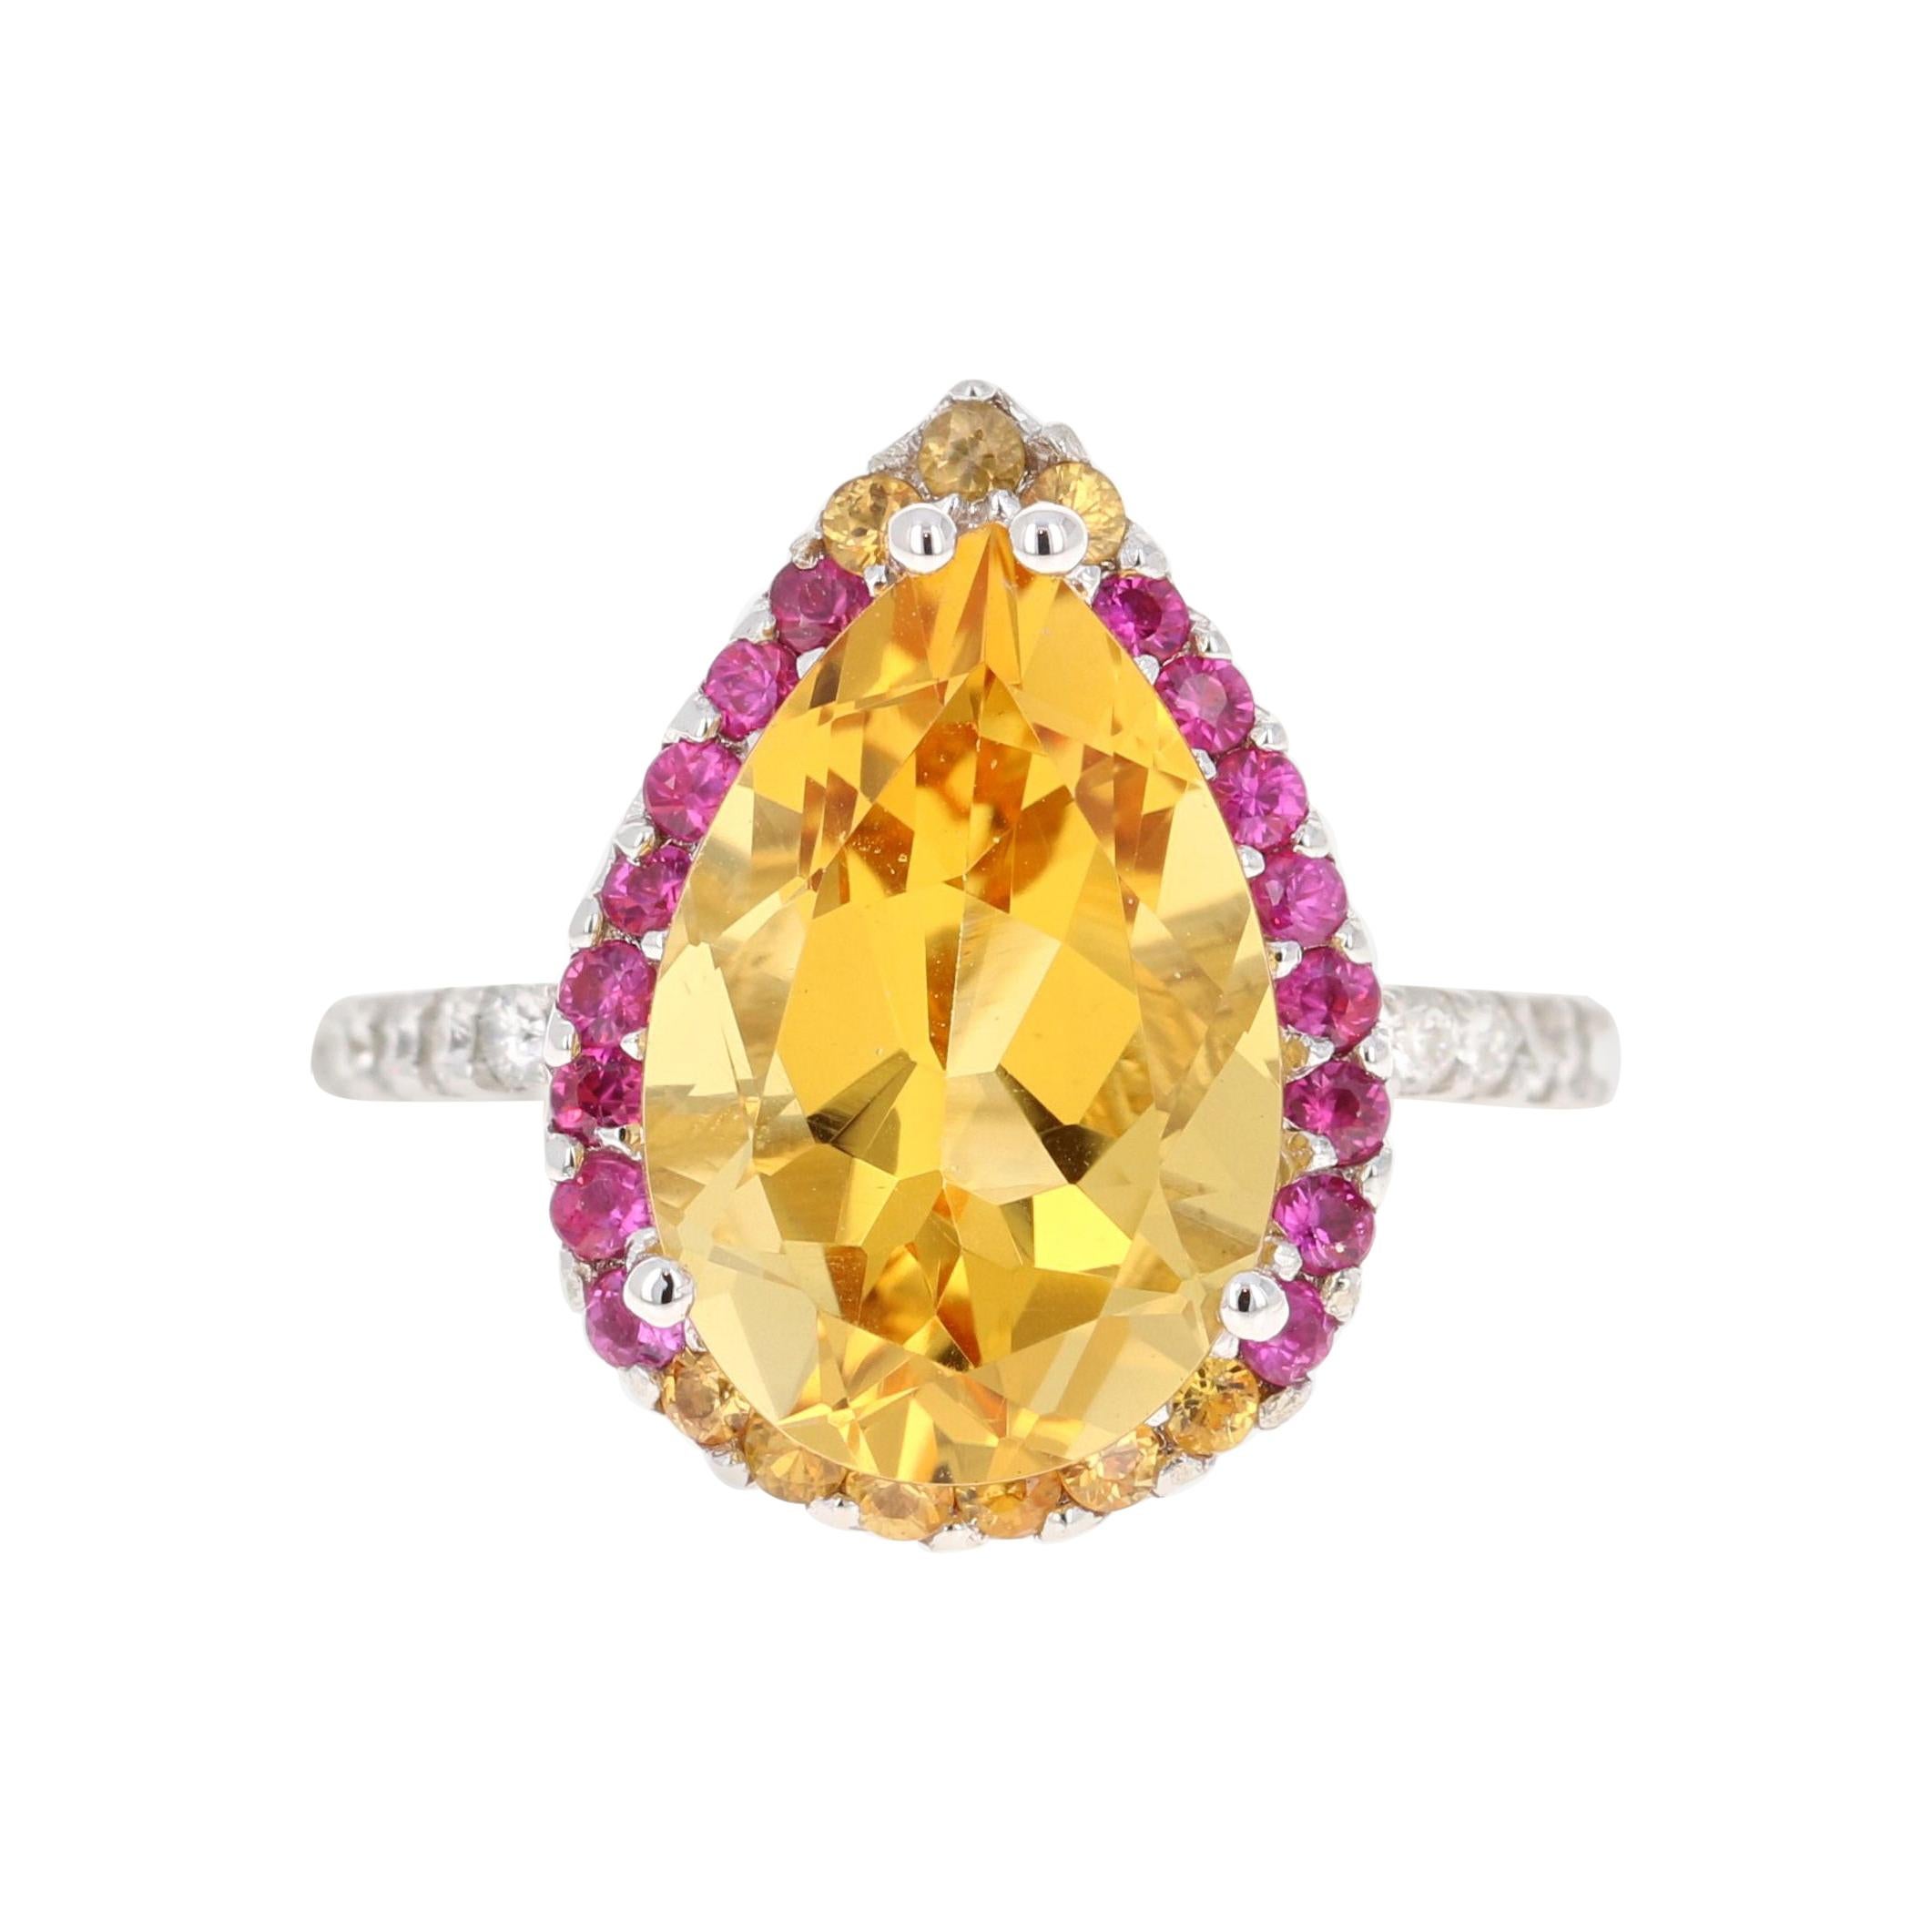 Dieser wunderschöne Ring hat einen prächtigen Citrinquarz im Birnenschliff mit einem Gewicht von 5,28 Karat und ist umgeben von 25 rosa und gelben Saphiren mit einem Gewicht von 0,60 Karat und 20 Diamanten im Rundschliff mit einem Gewicht von 0,37